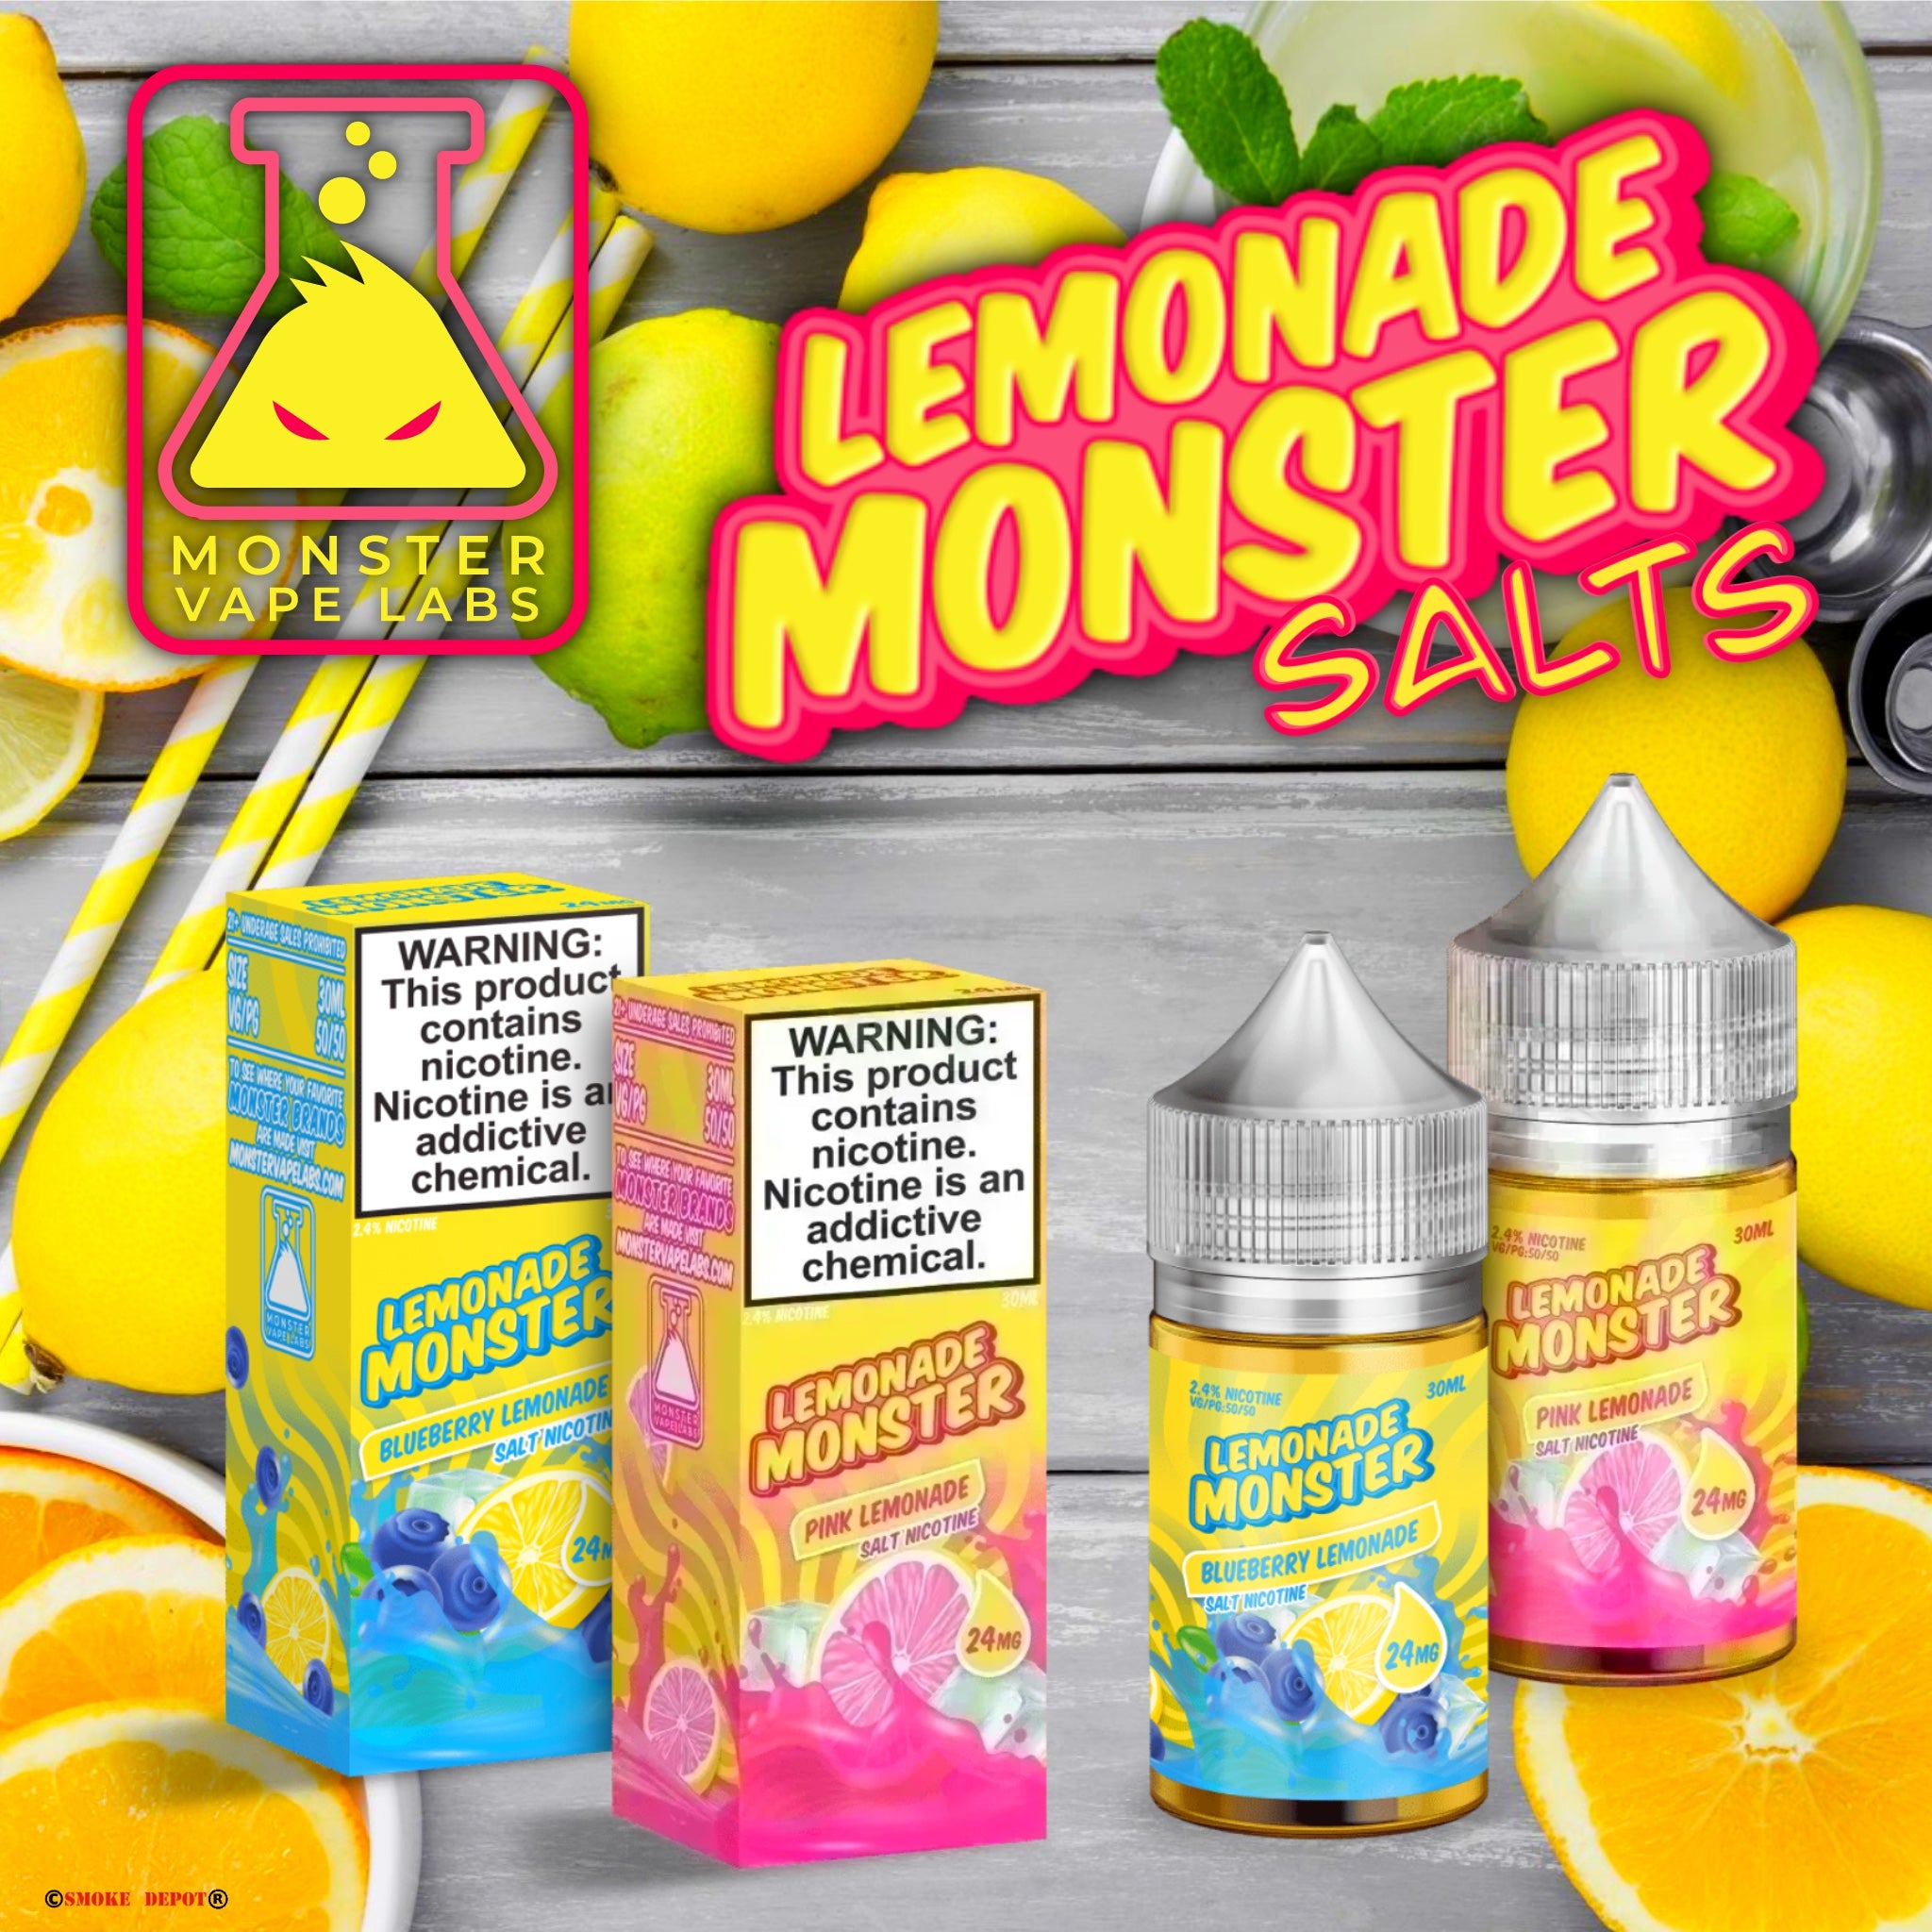 MONSTER Lemonade Monster Salts